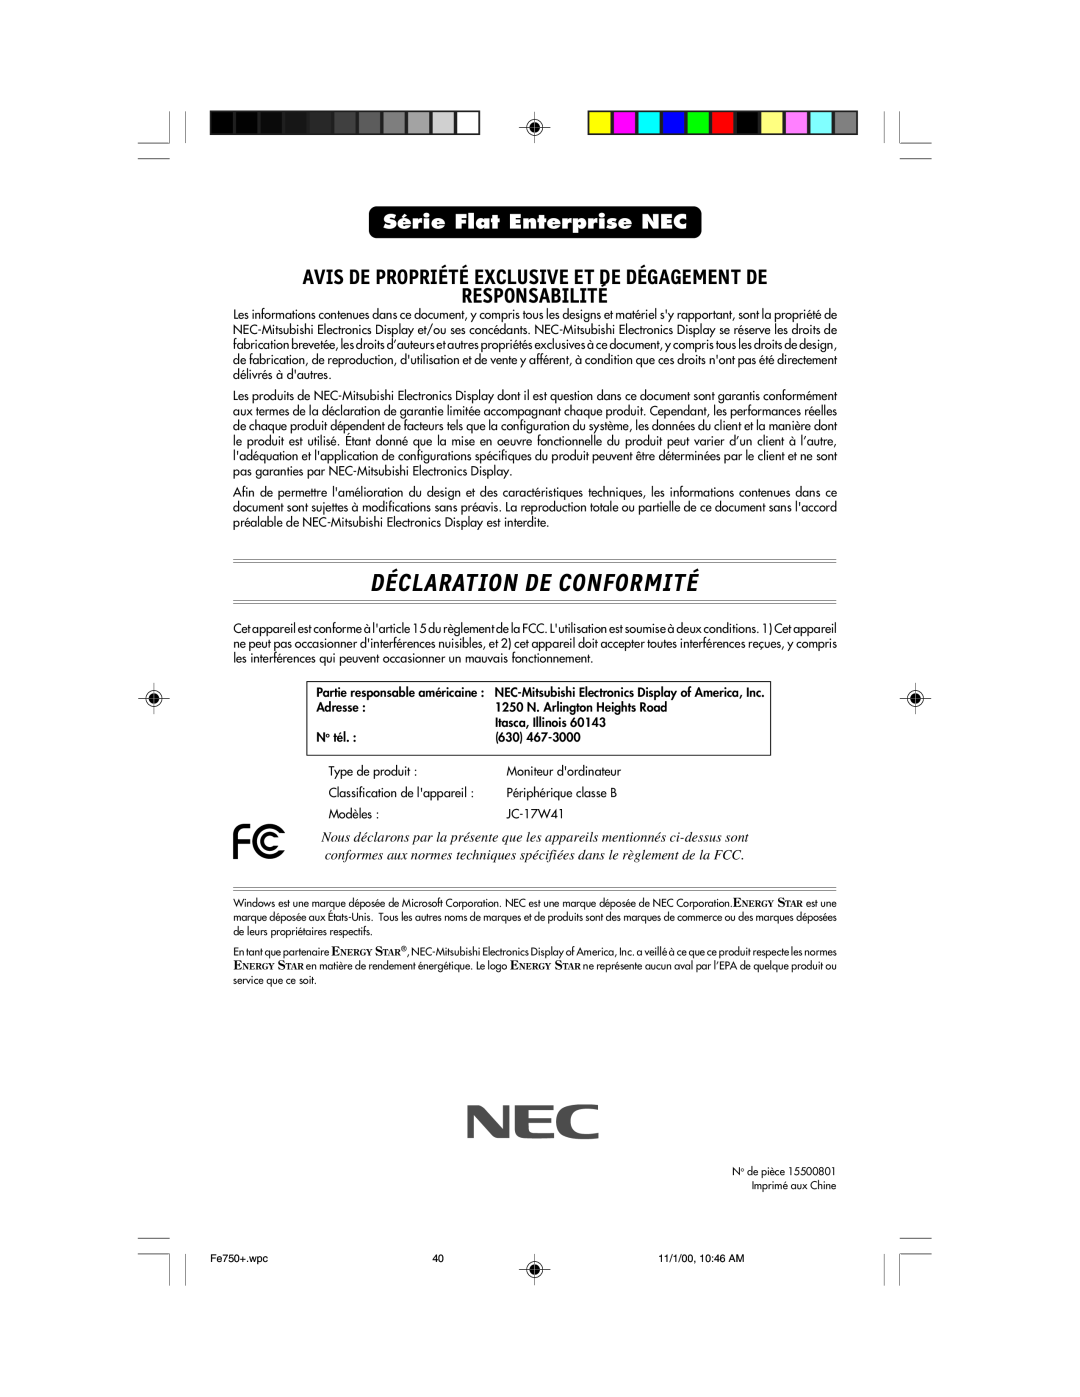 NEC FE750 Plus user manual Déclaration De Conformité, Avis De Propriété Exclusive Et De Dégagement De Responsabilité 